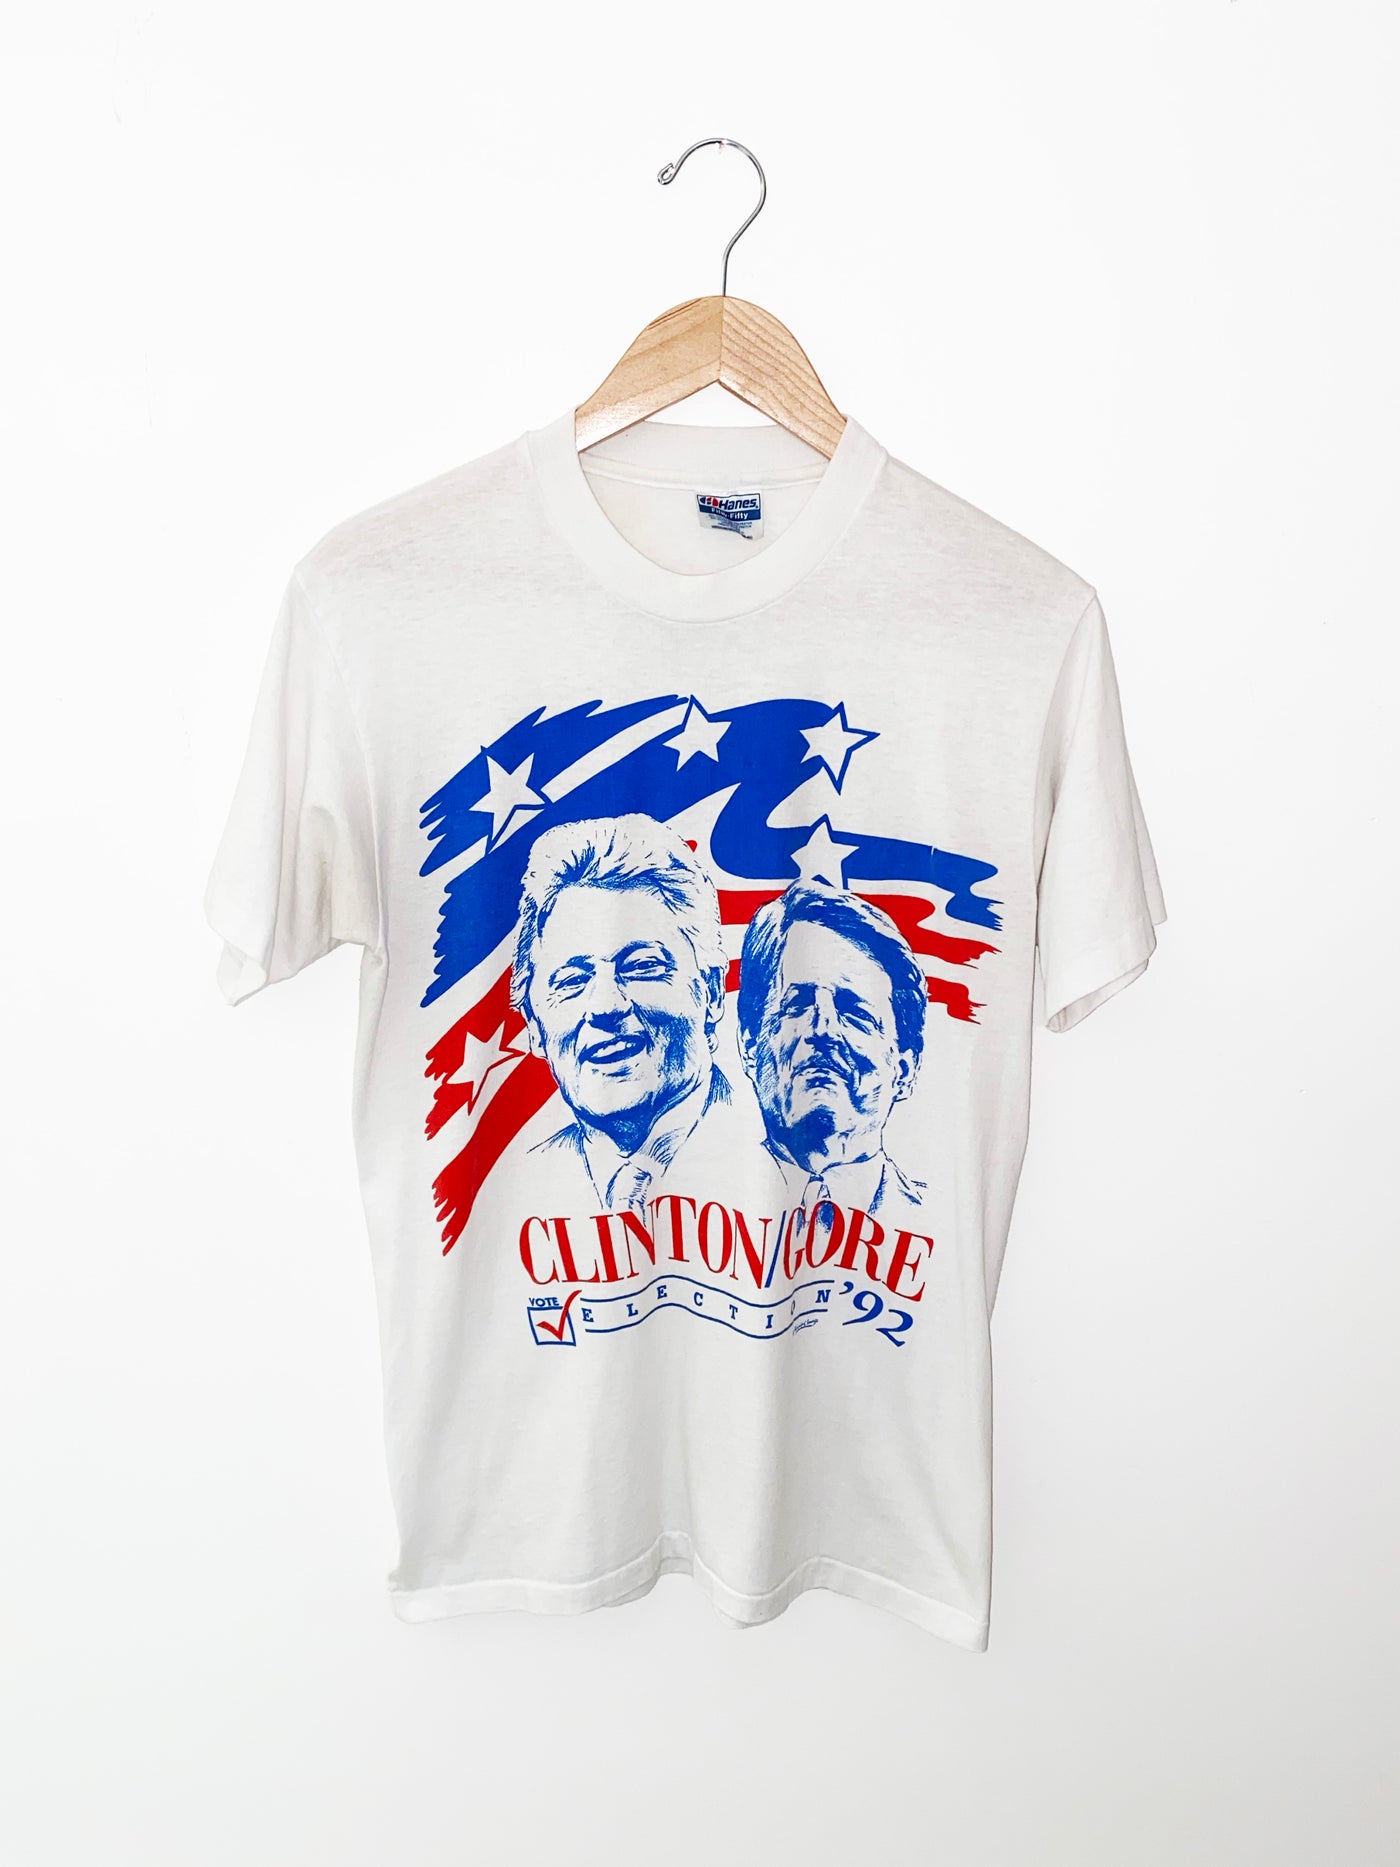 Vintage 1992 Clinton x Gore Campaign Shirt